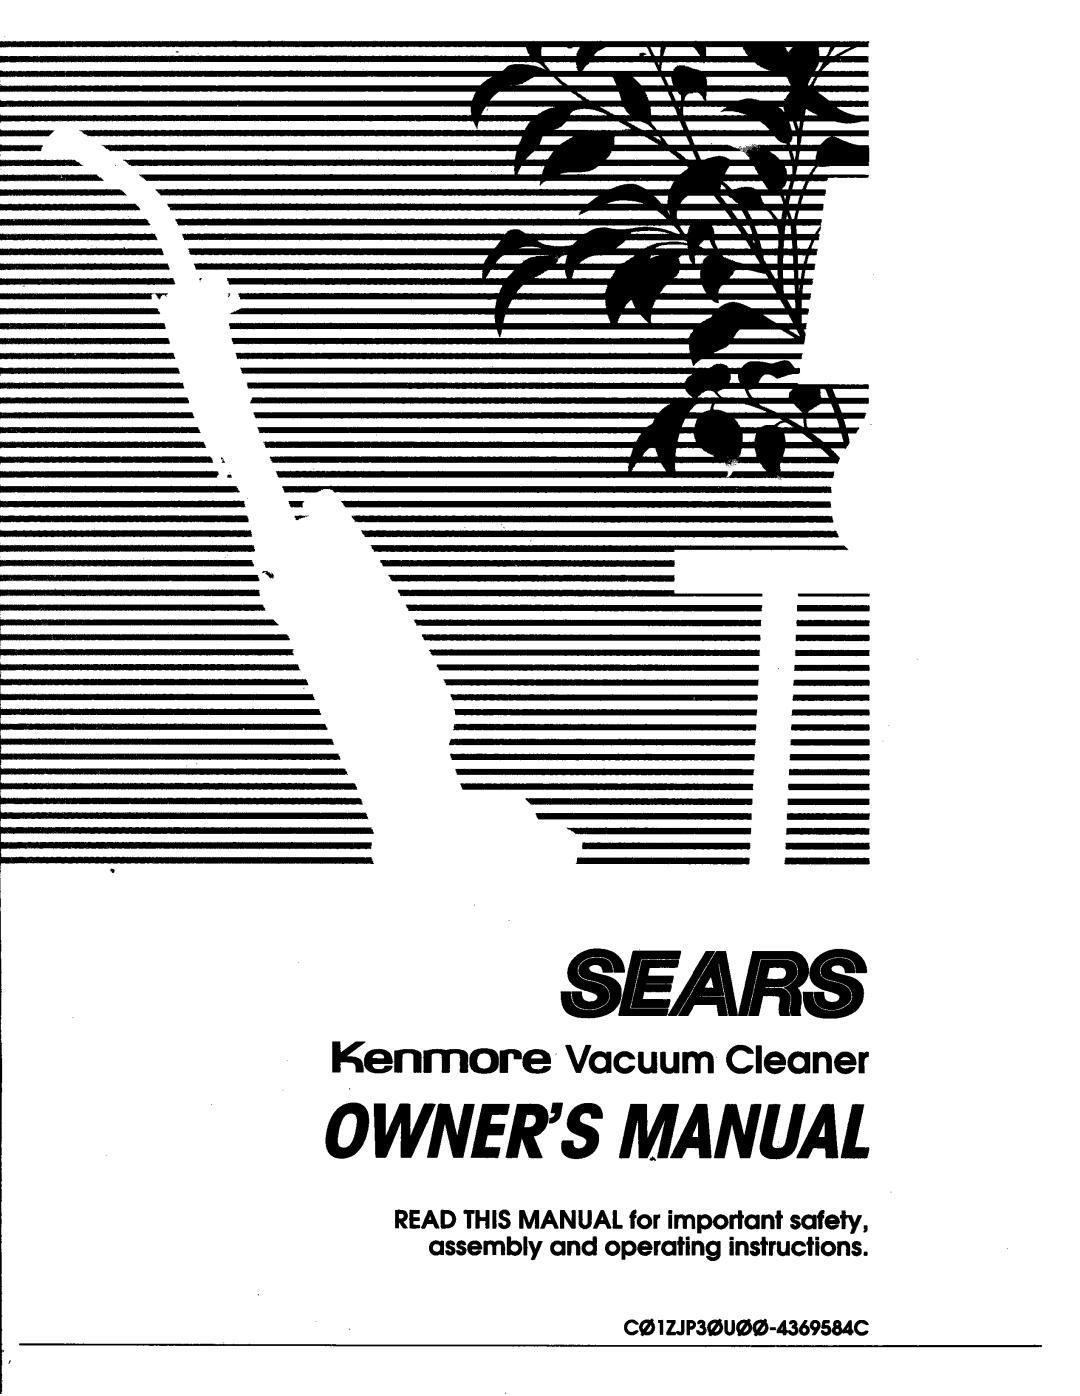 Sears owner manual Sears, Ownersmanual, Kenmore Vacuum Cleaner, C 1ZJP3U-4369584C 